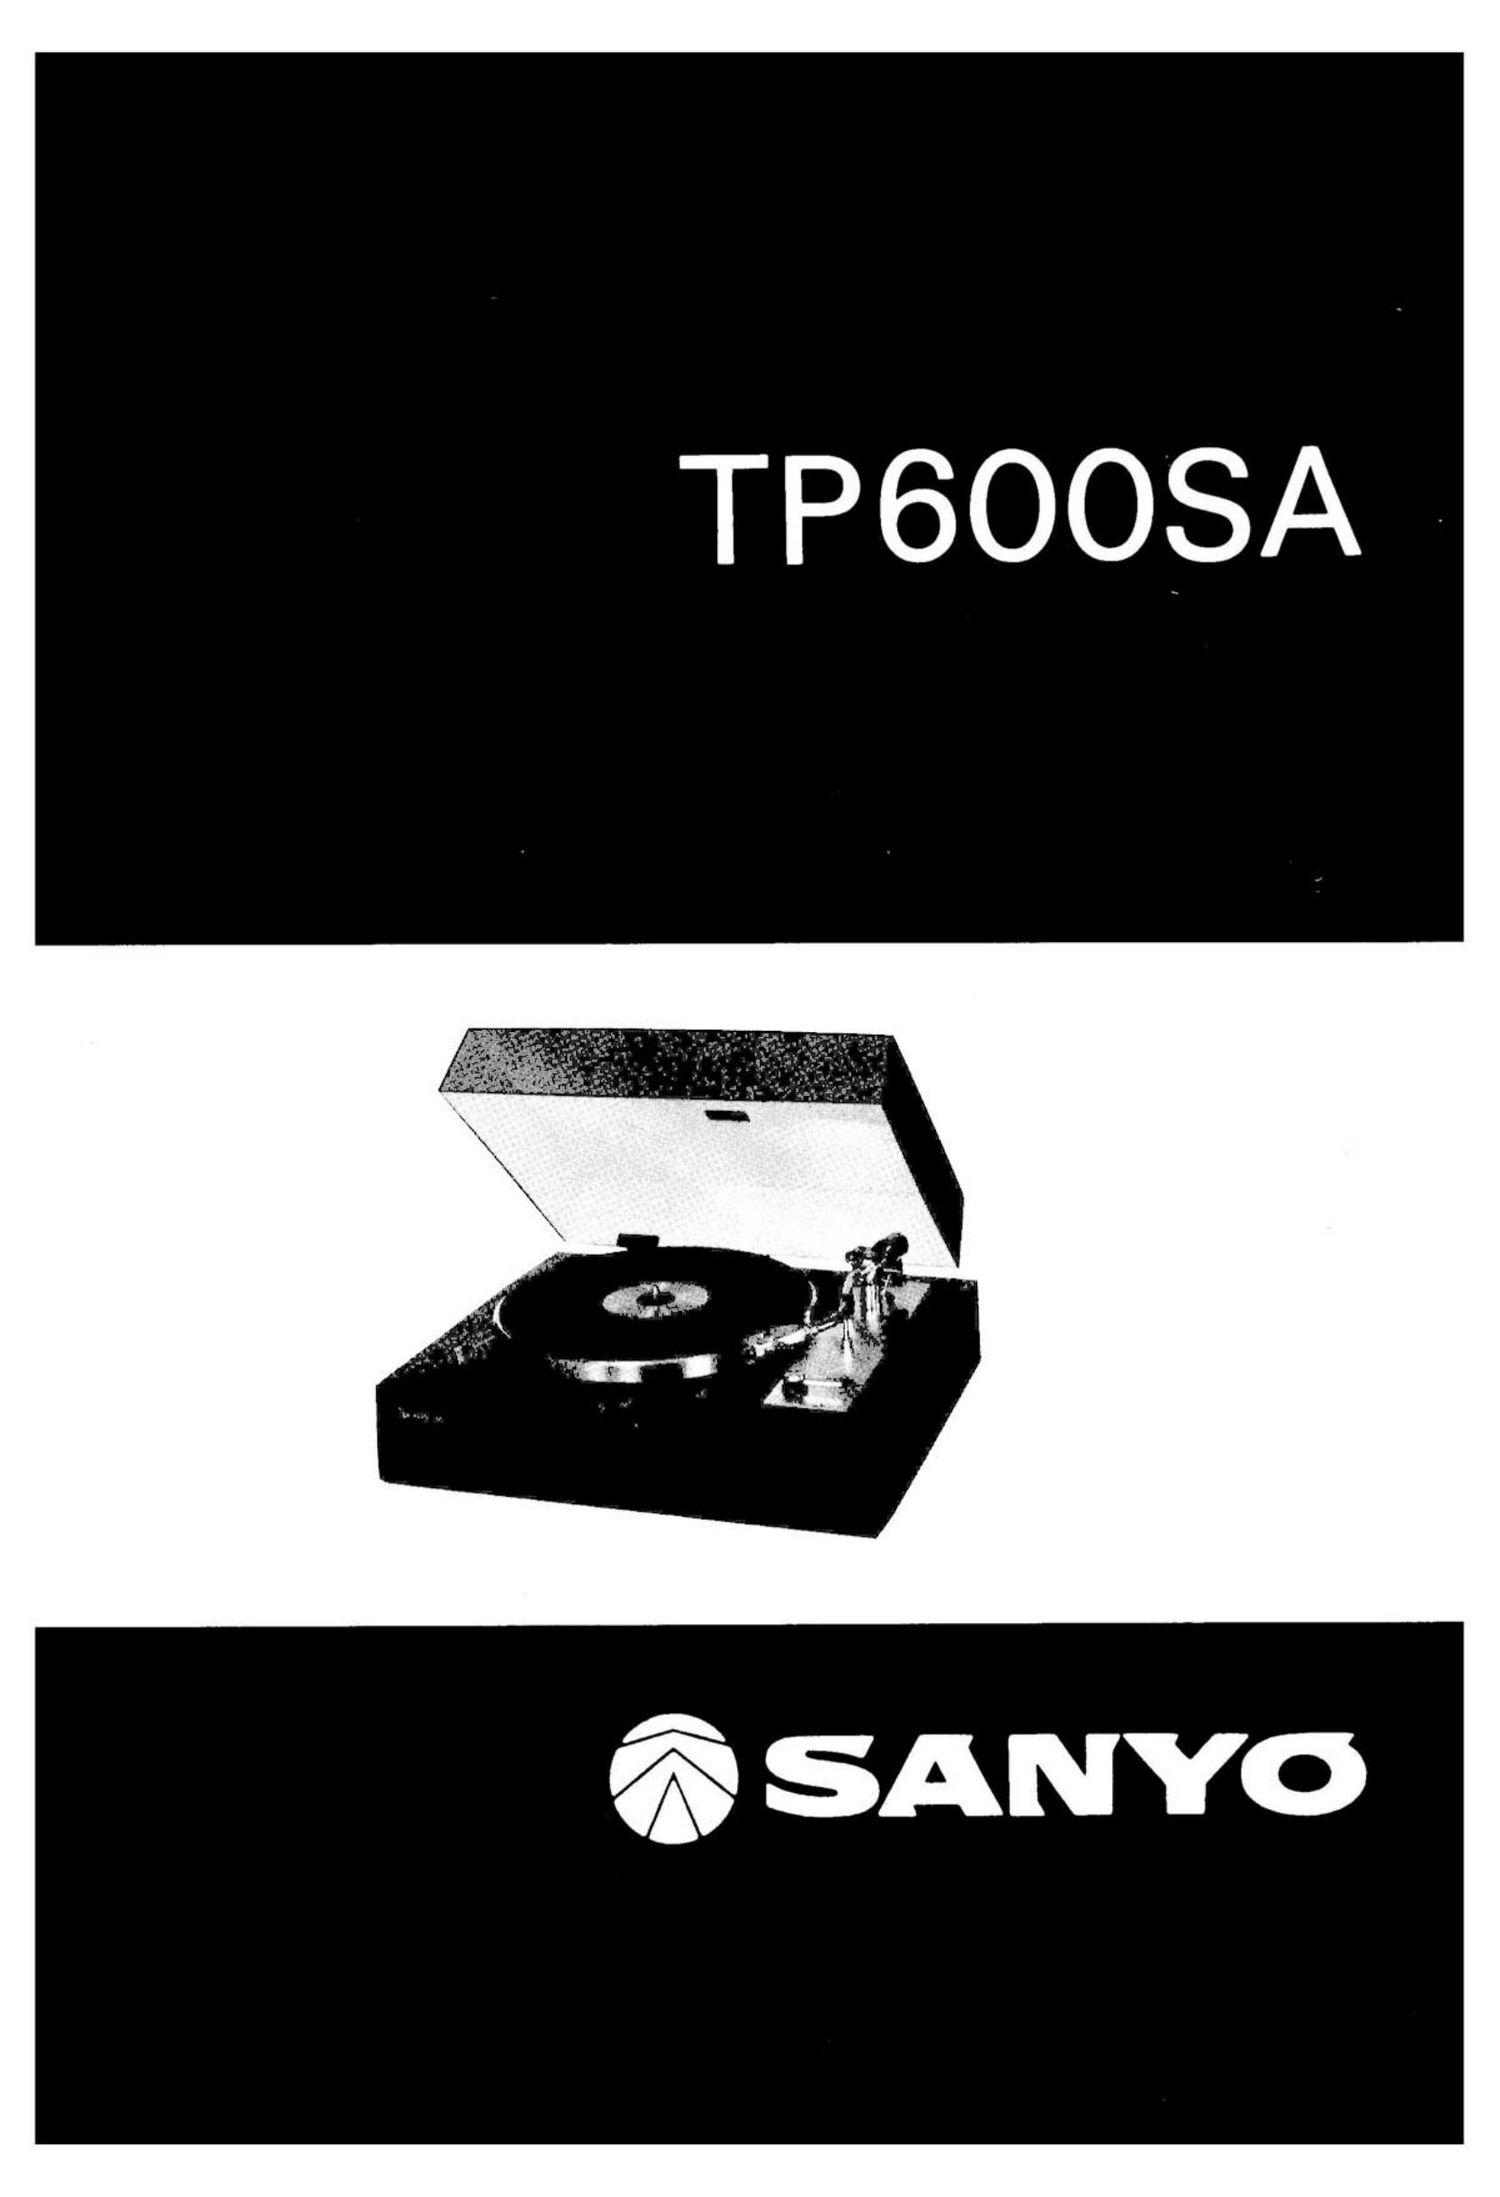 Sanyo TP 600SA Owners Manual